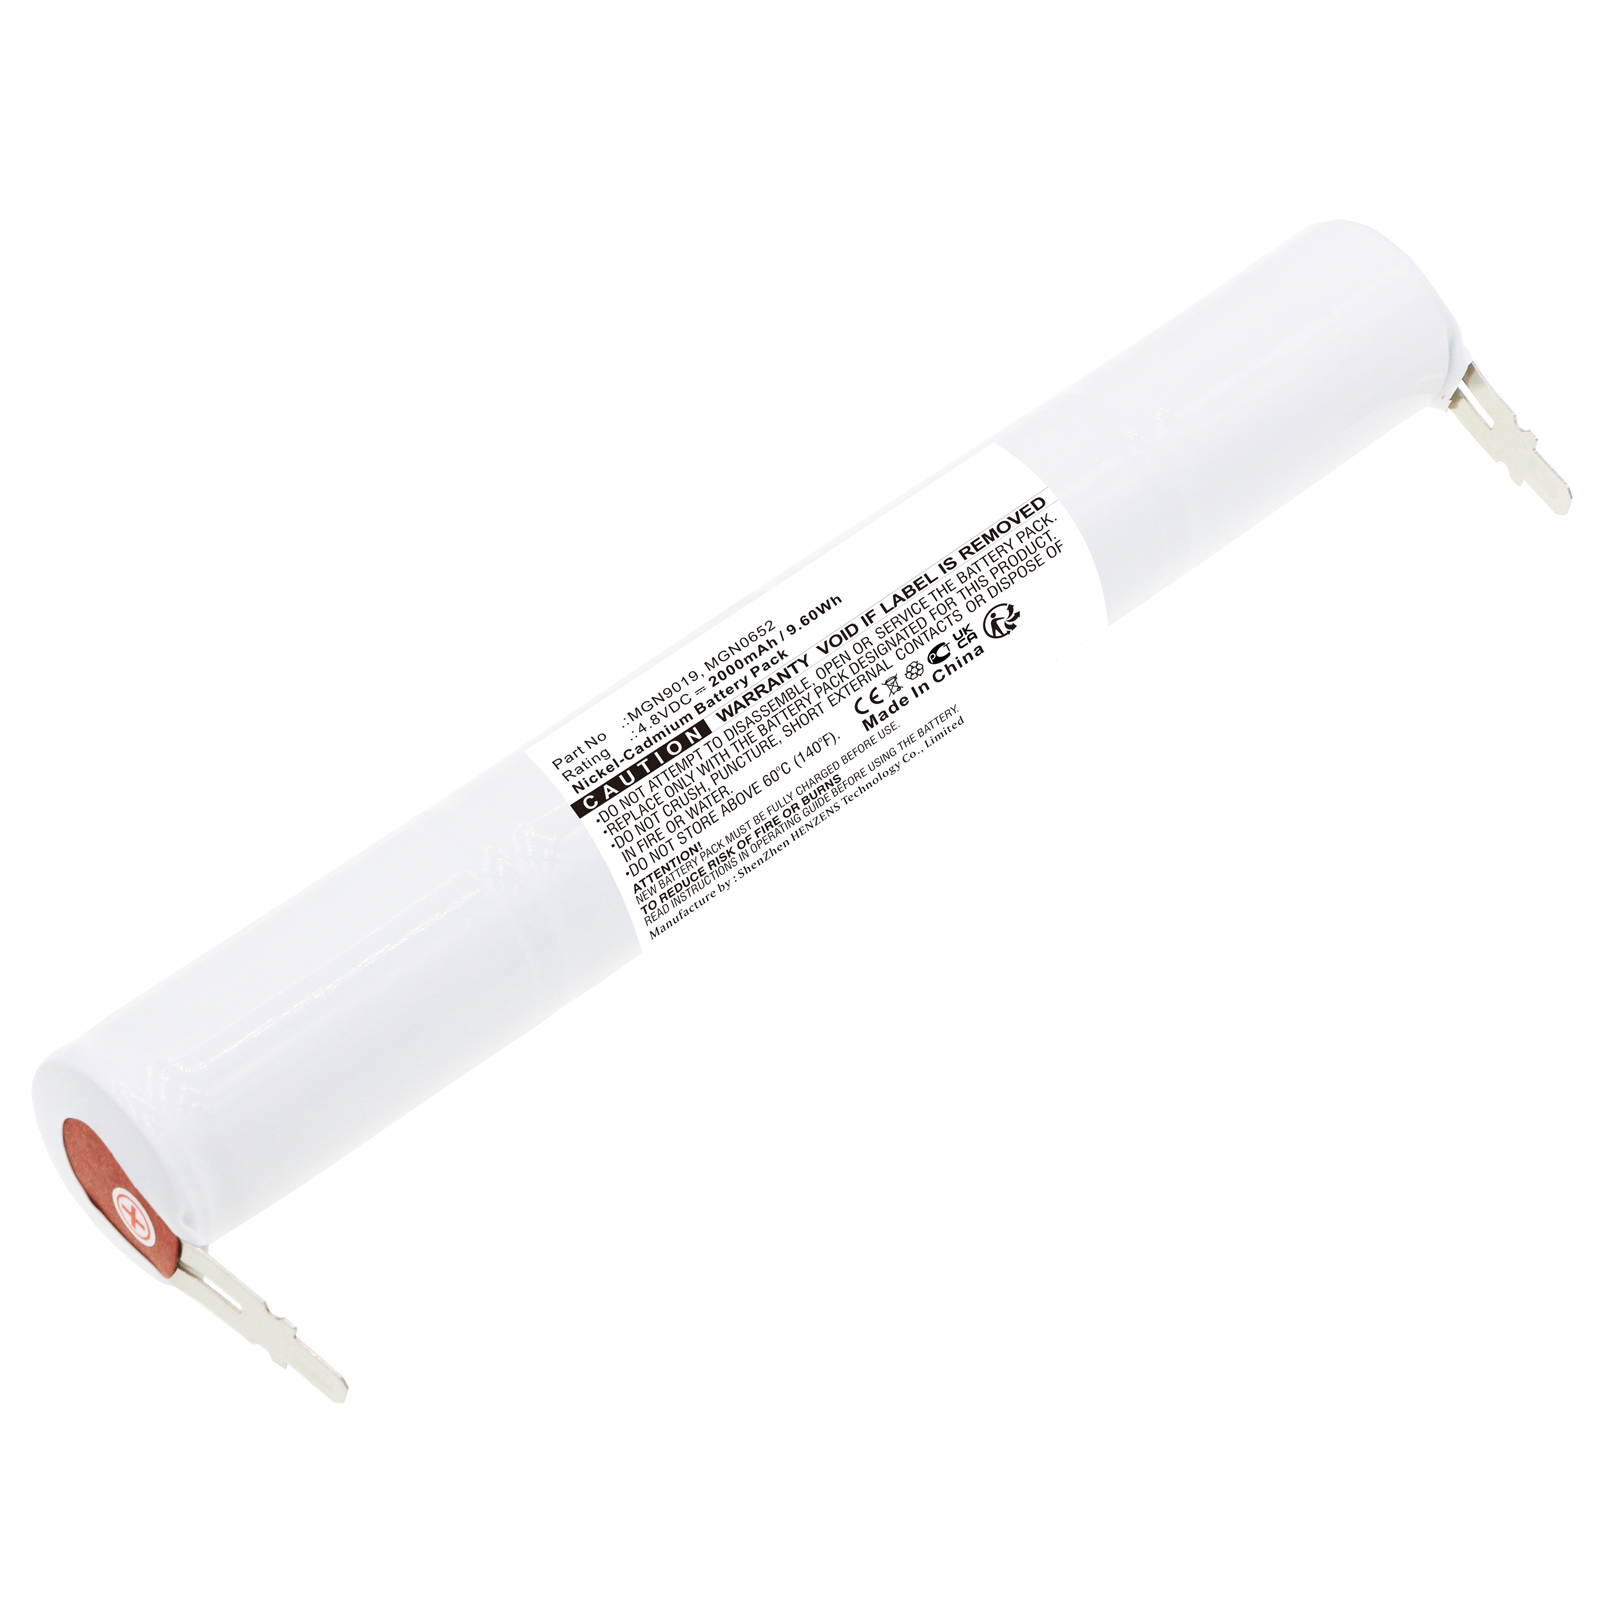 Synergy Digital Emergency Lighting Battery Compatible with BAES MGN0652 Emergency Lighting Battery (Ni-CD, 4.8V, 2000mAh)